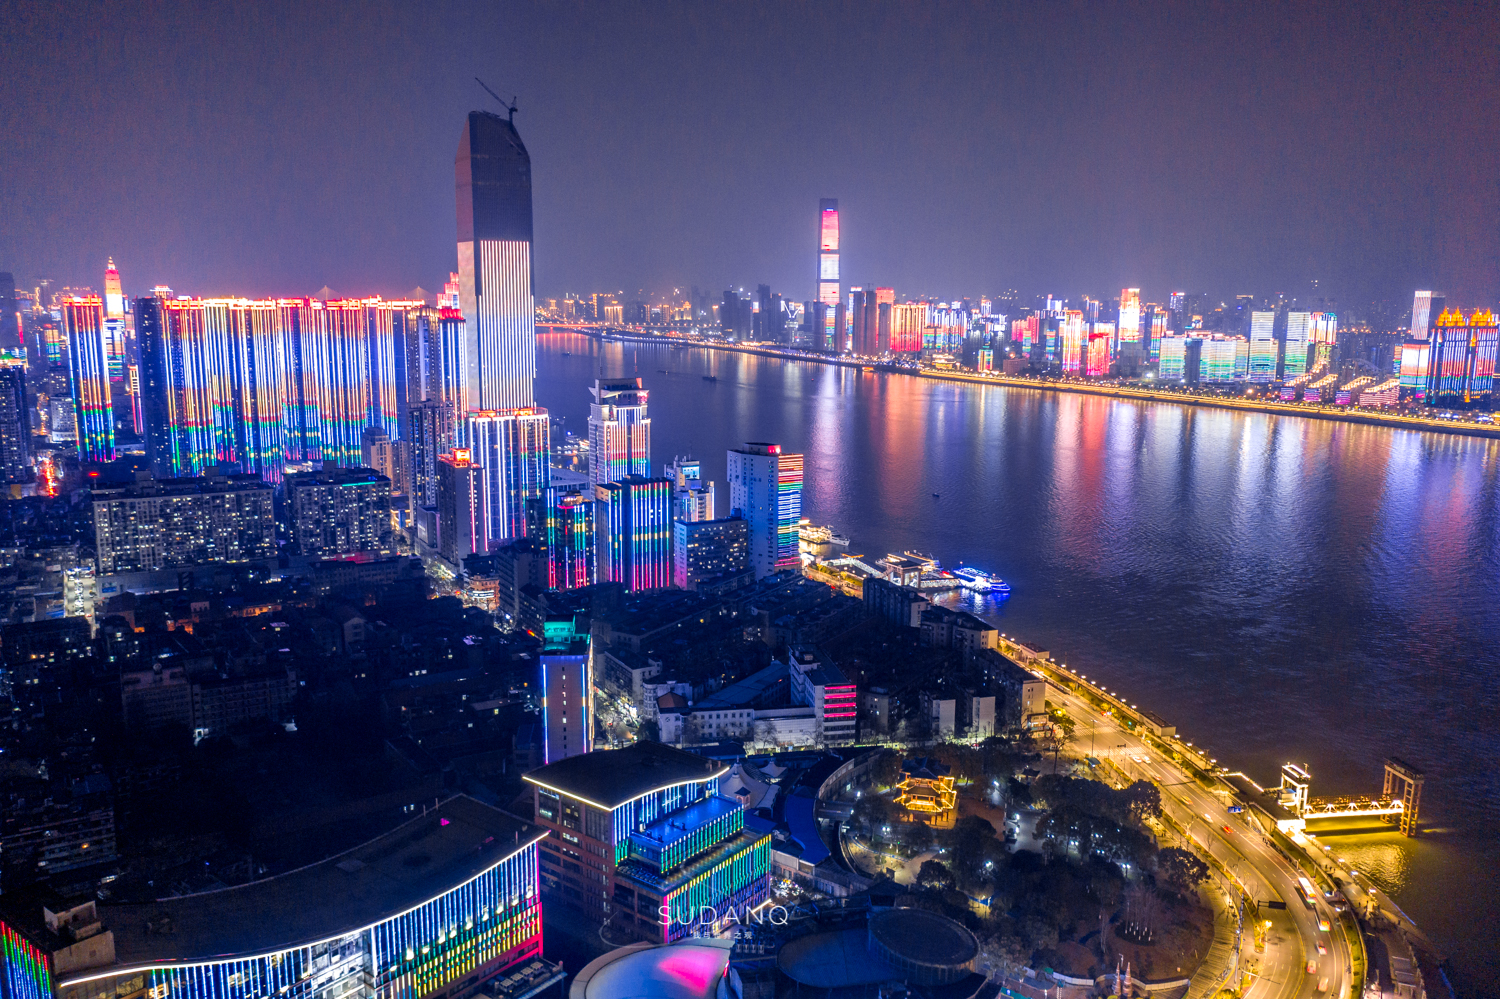 原创武汉夜景能全国排名第几仅一座彩虹桥就美得令人叹为观止